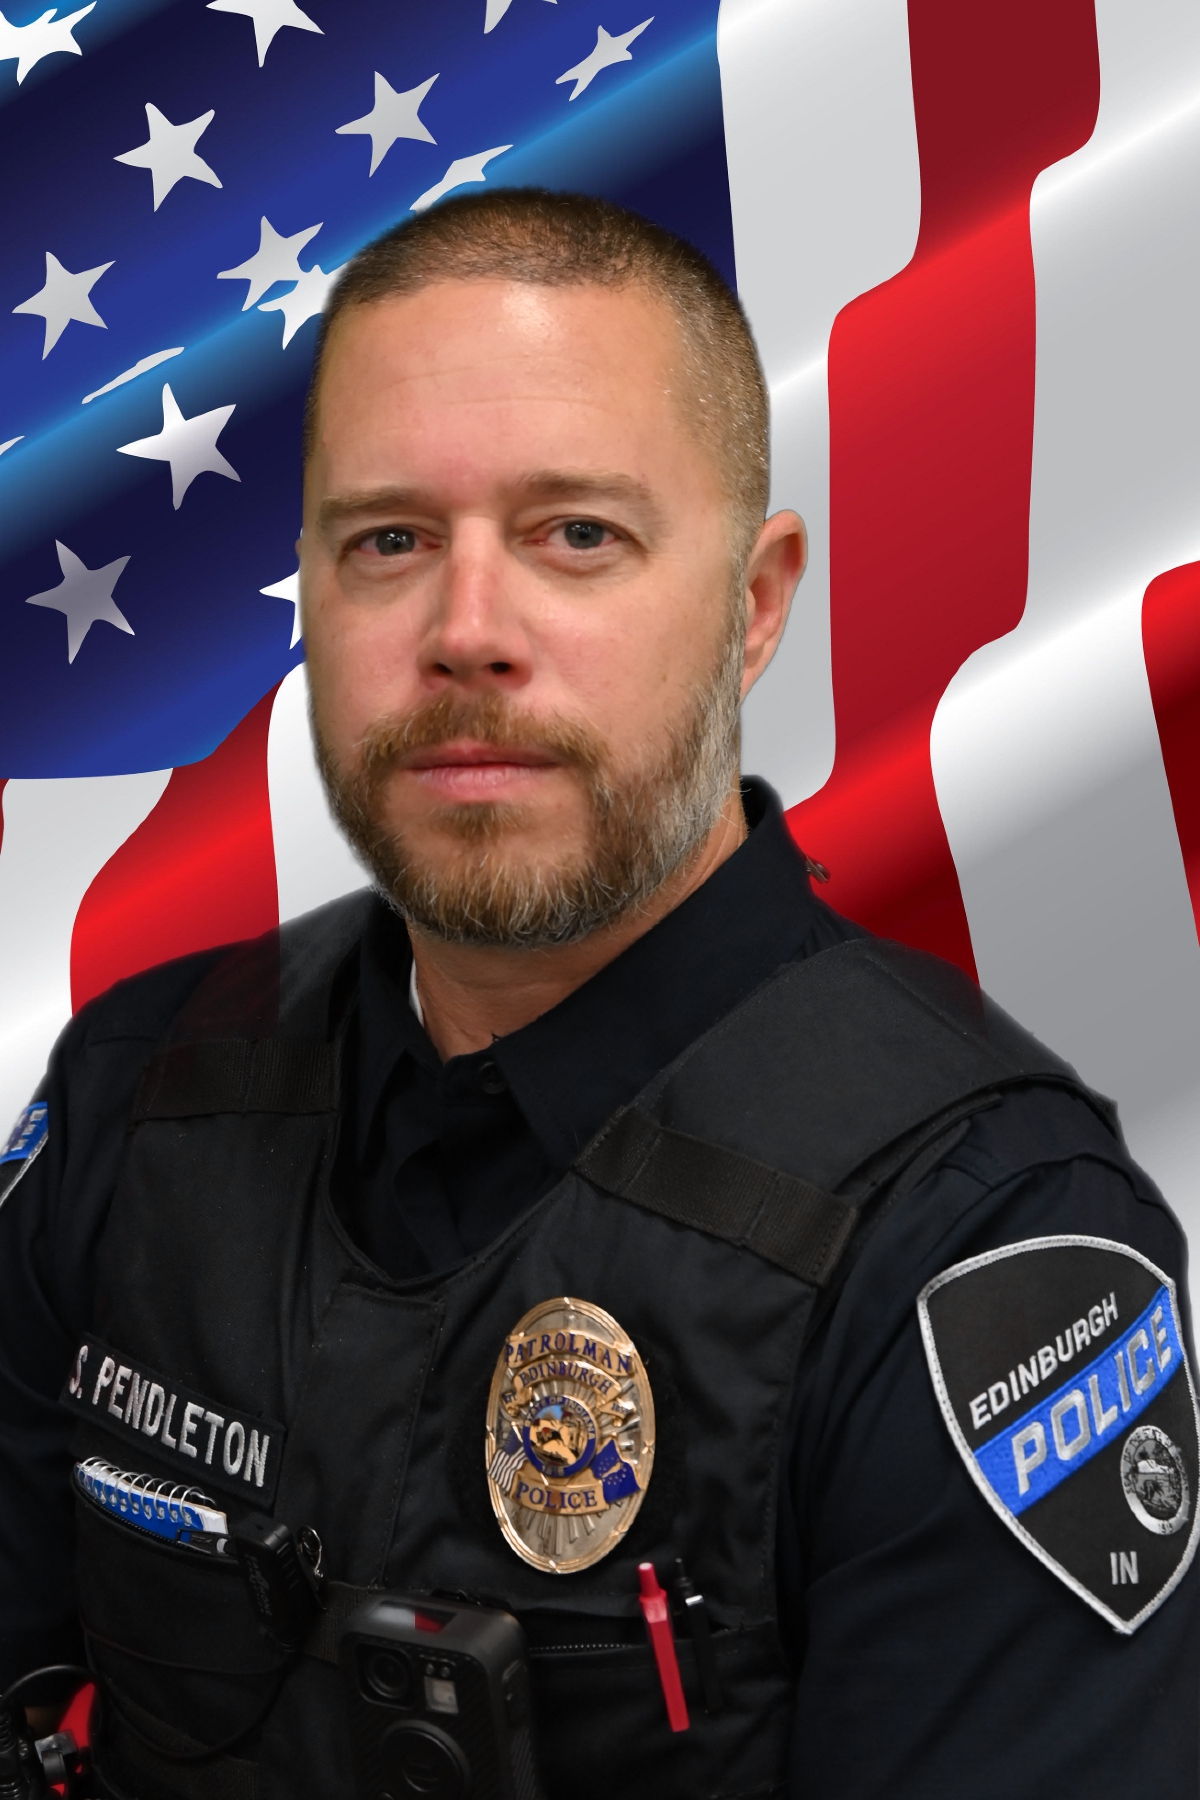 Officer Sean Pendleton